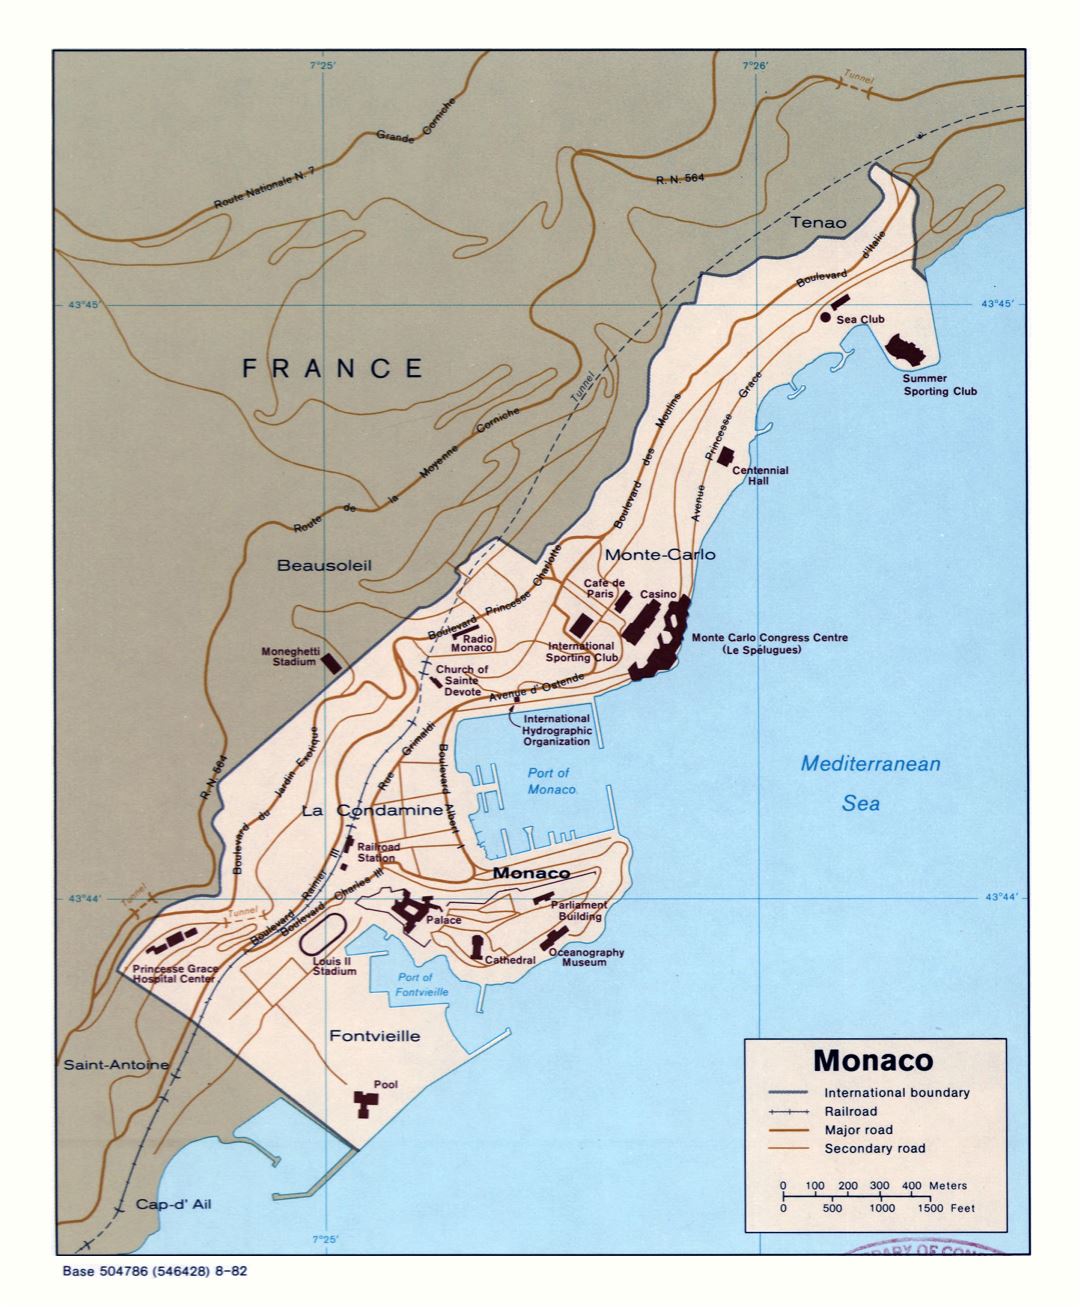 Крупномасштабная политическая карта Монако с дорогами, железными дорогами и зданиями - 1982